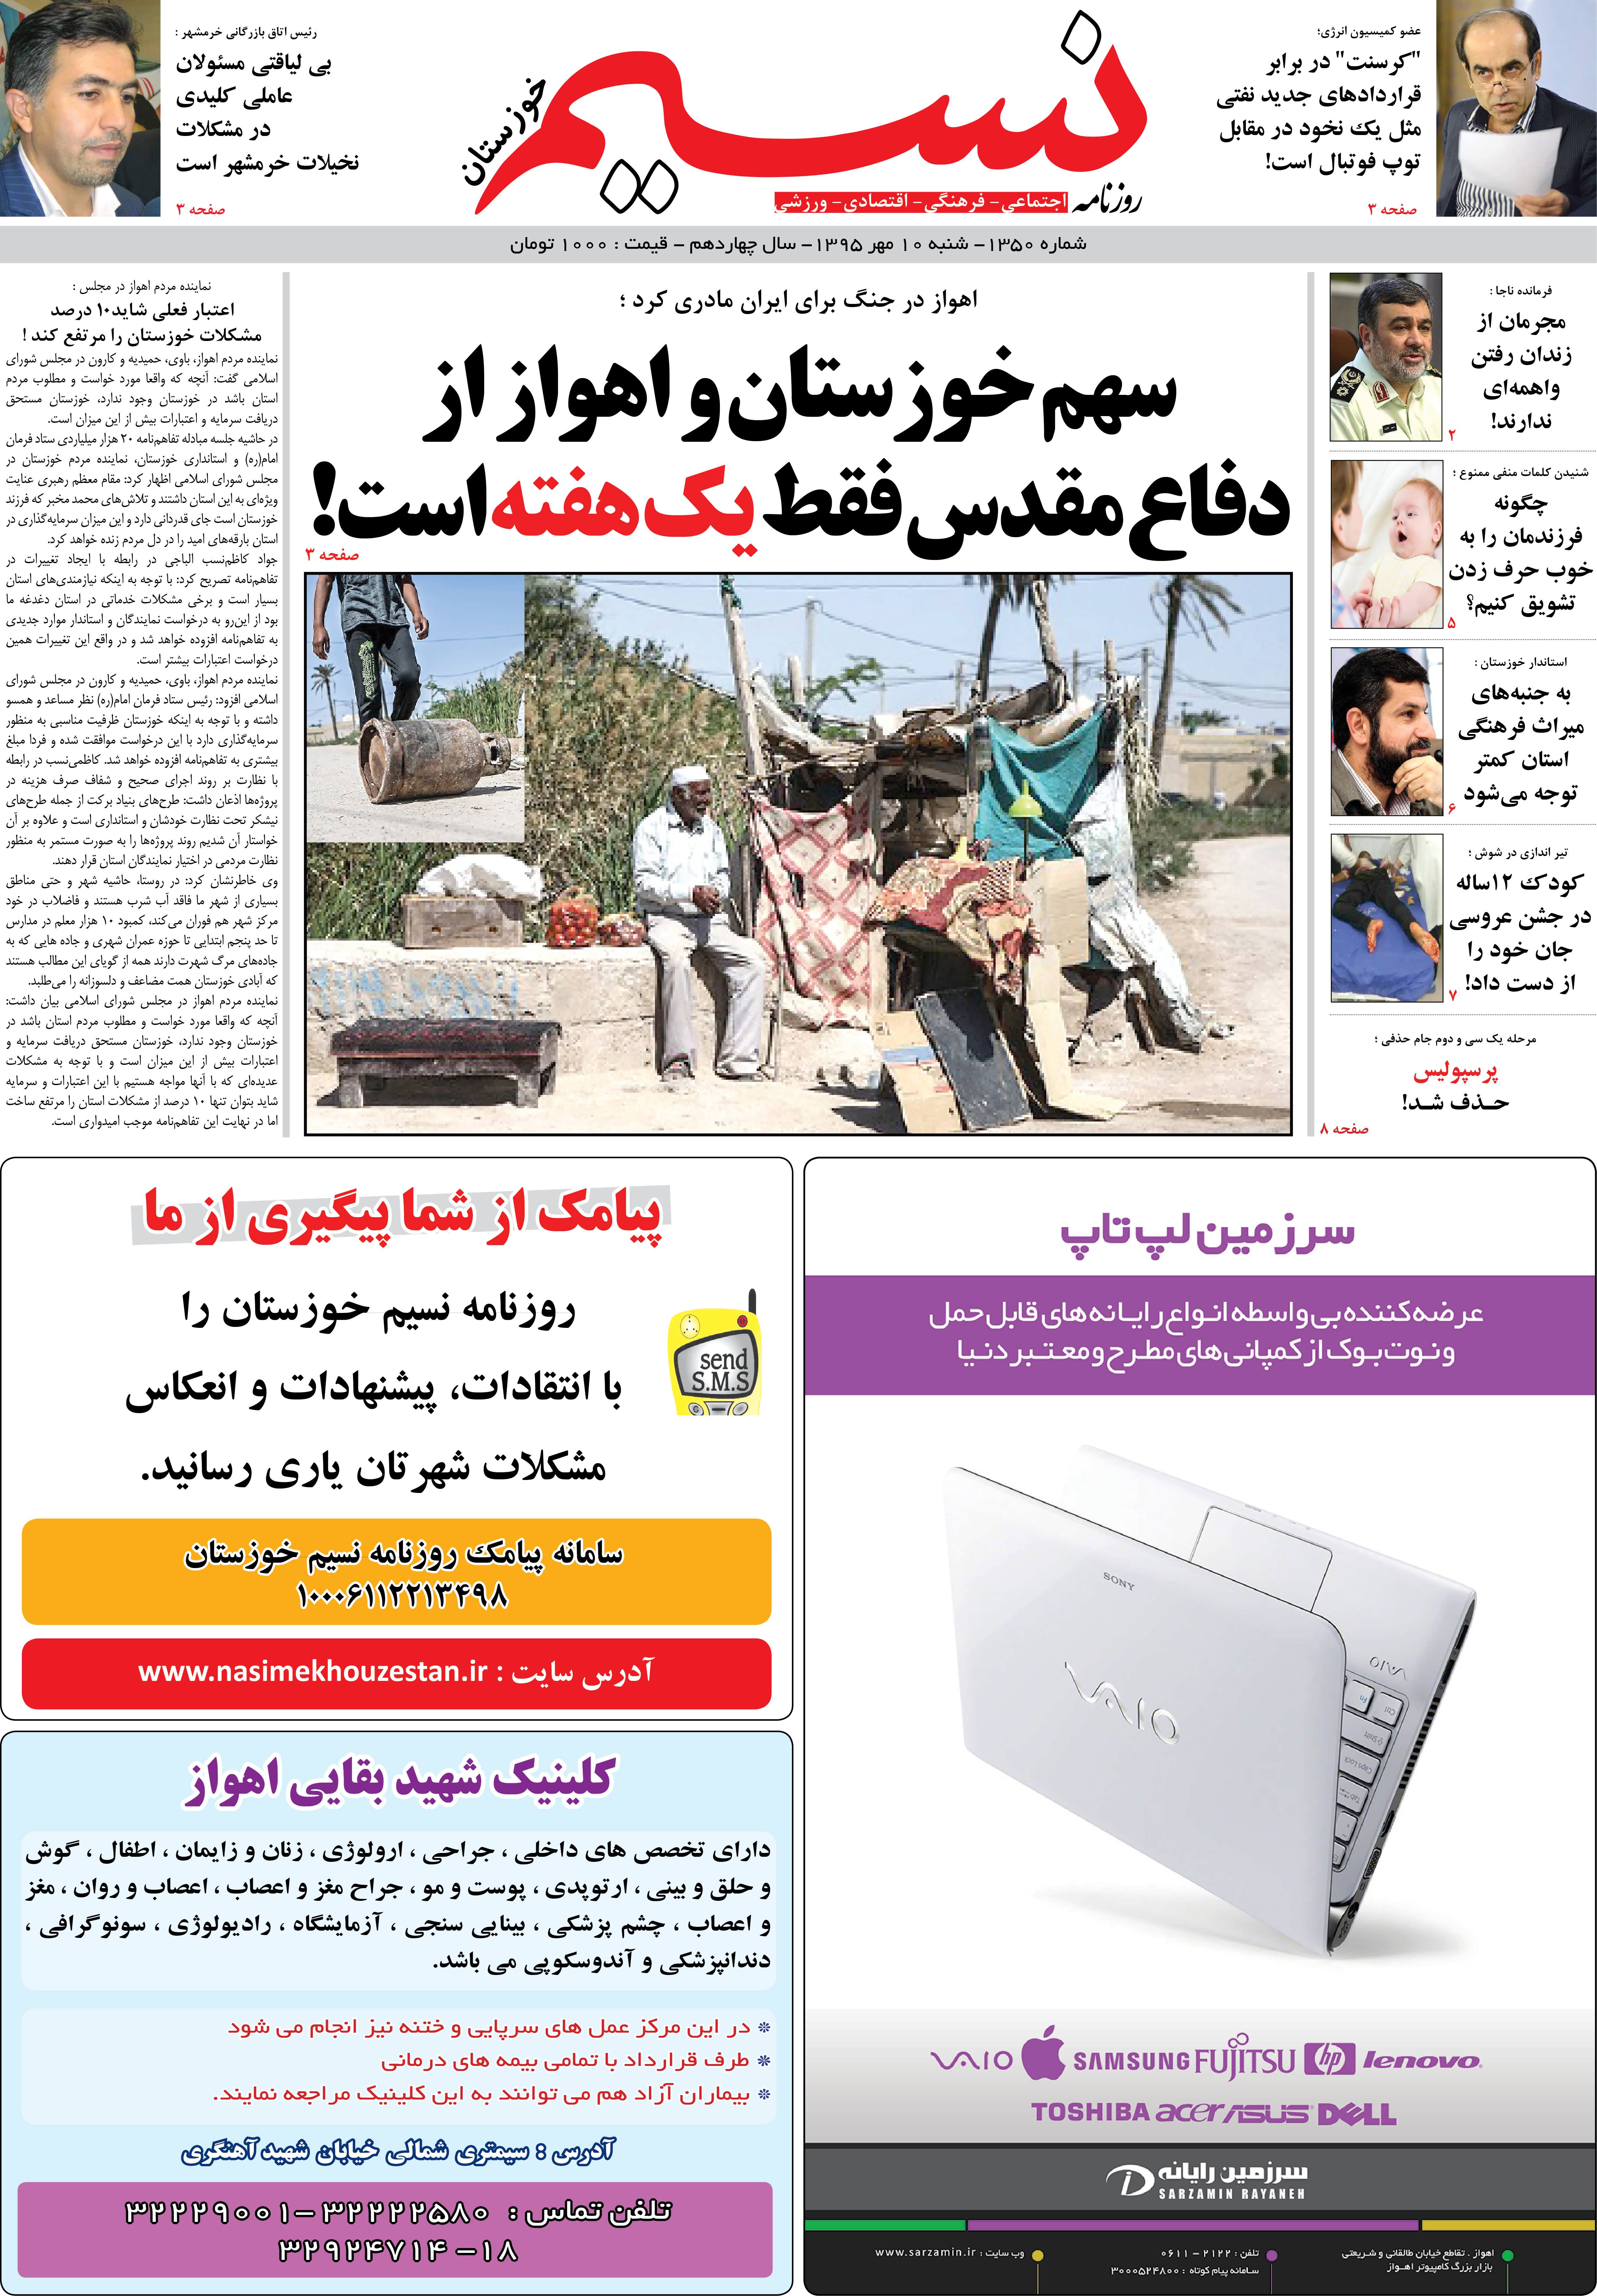 صفحه اصلی روزنامه نسیم شماره 1350